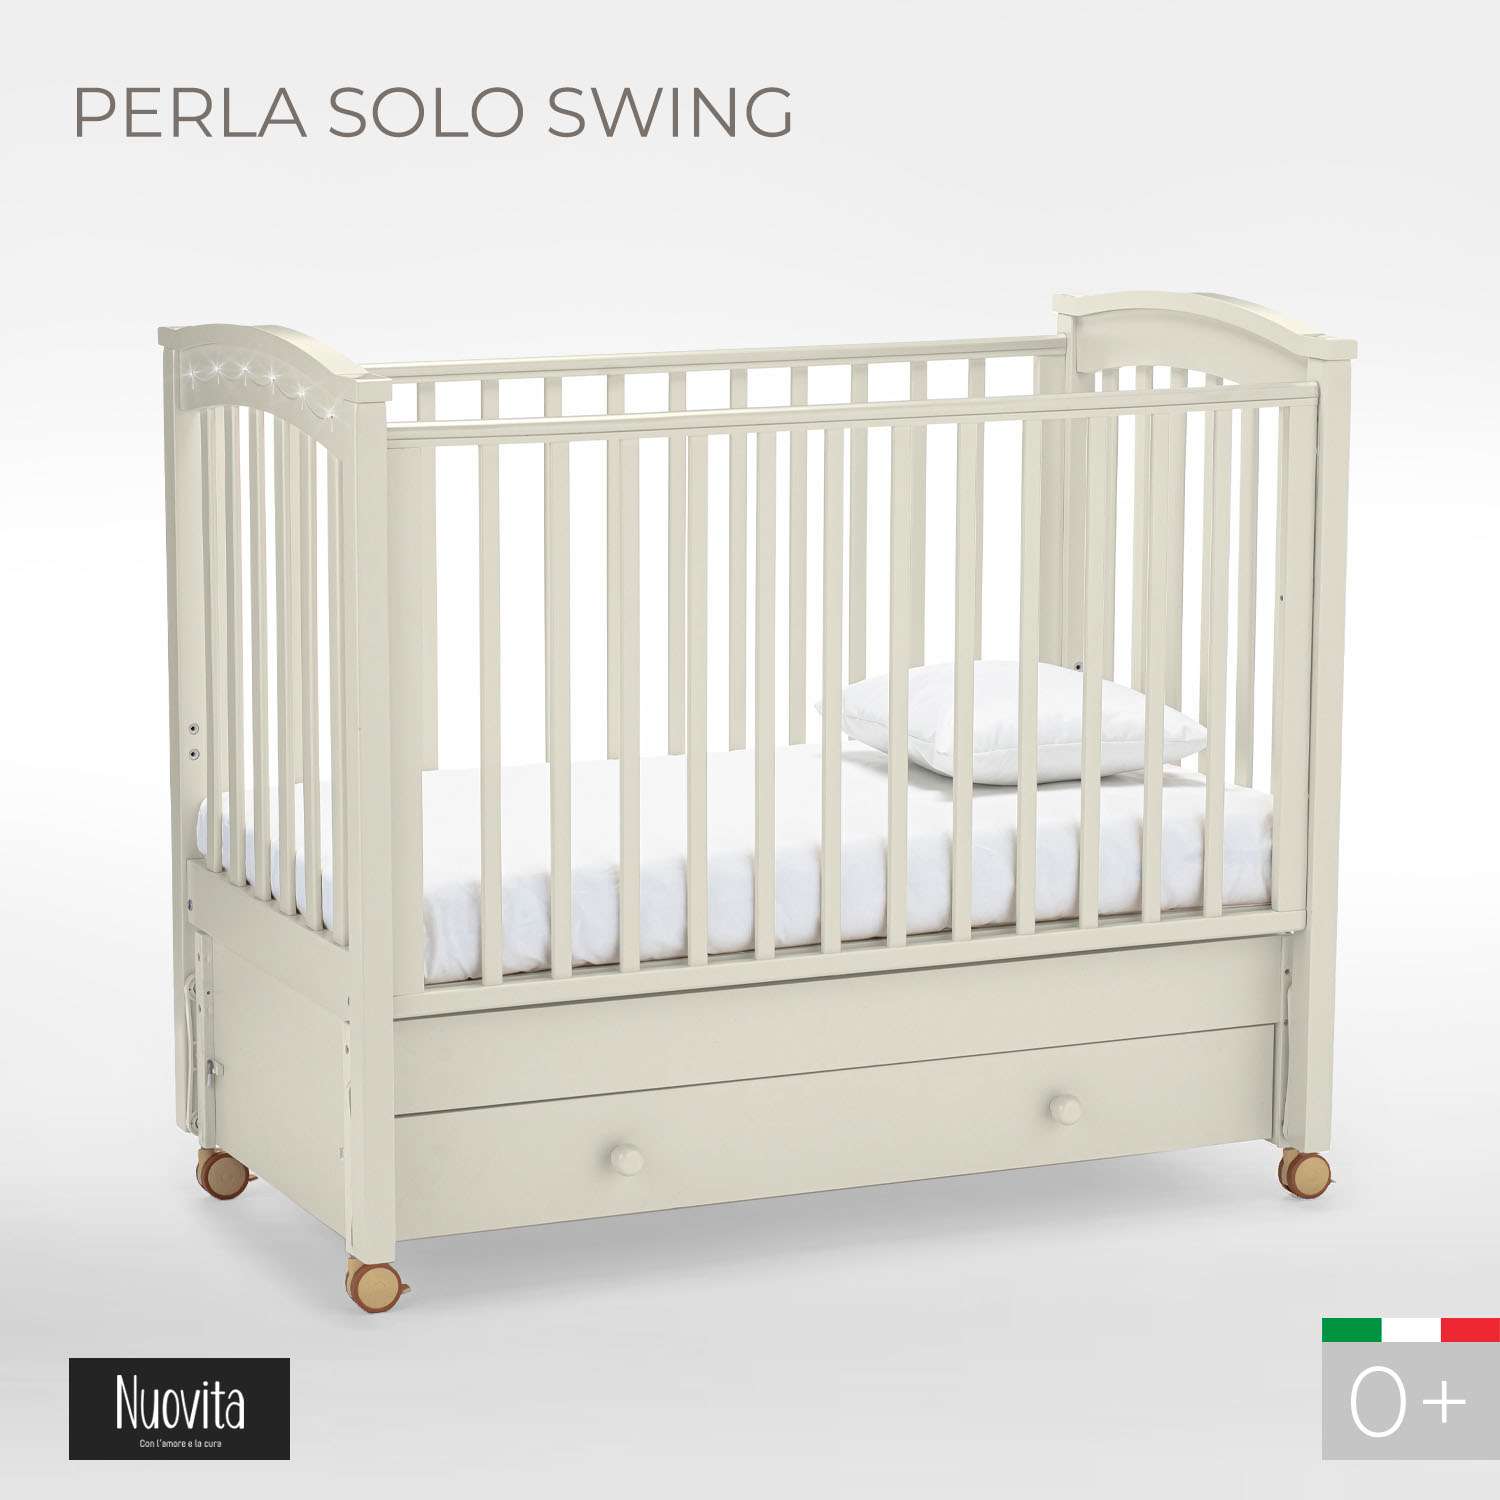 Детская кроватка Nuovita Perla Solo Swing прямоугольная, продольный маятник (ваниль) - фото 2